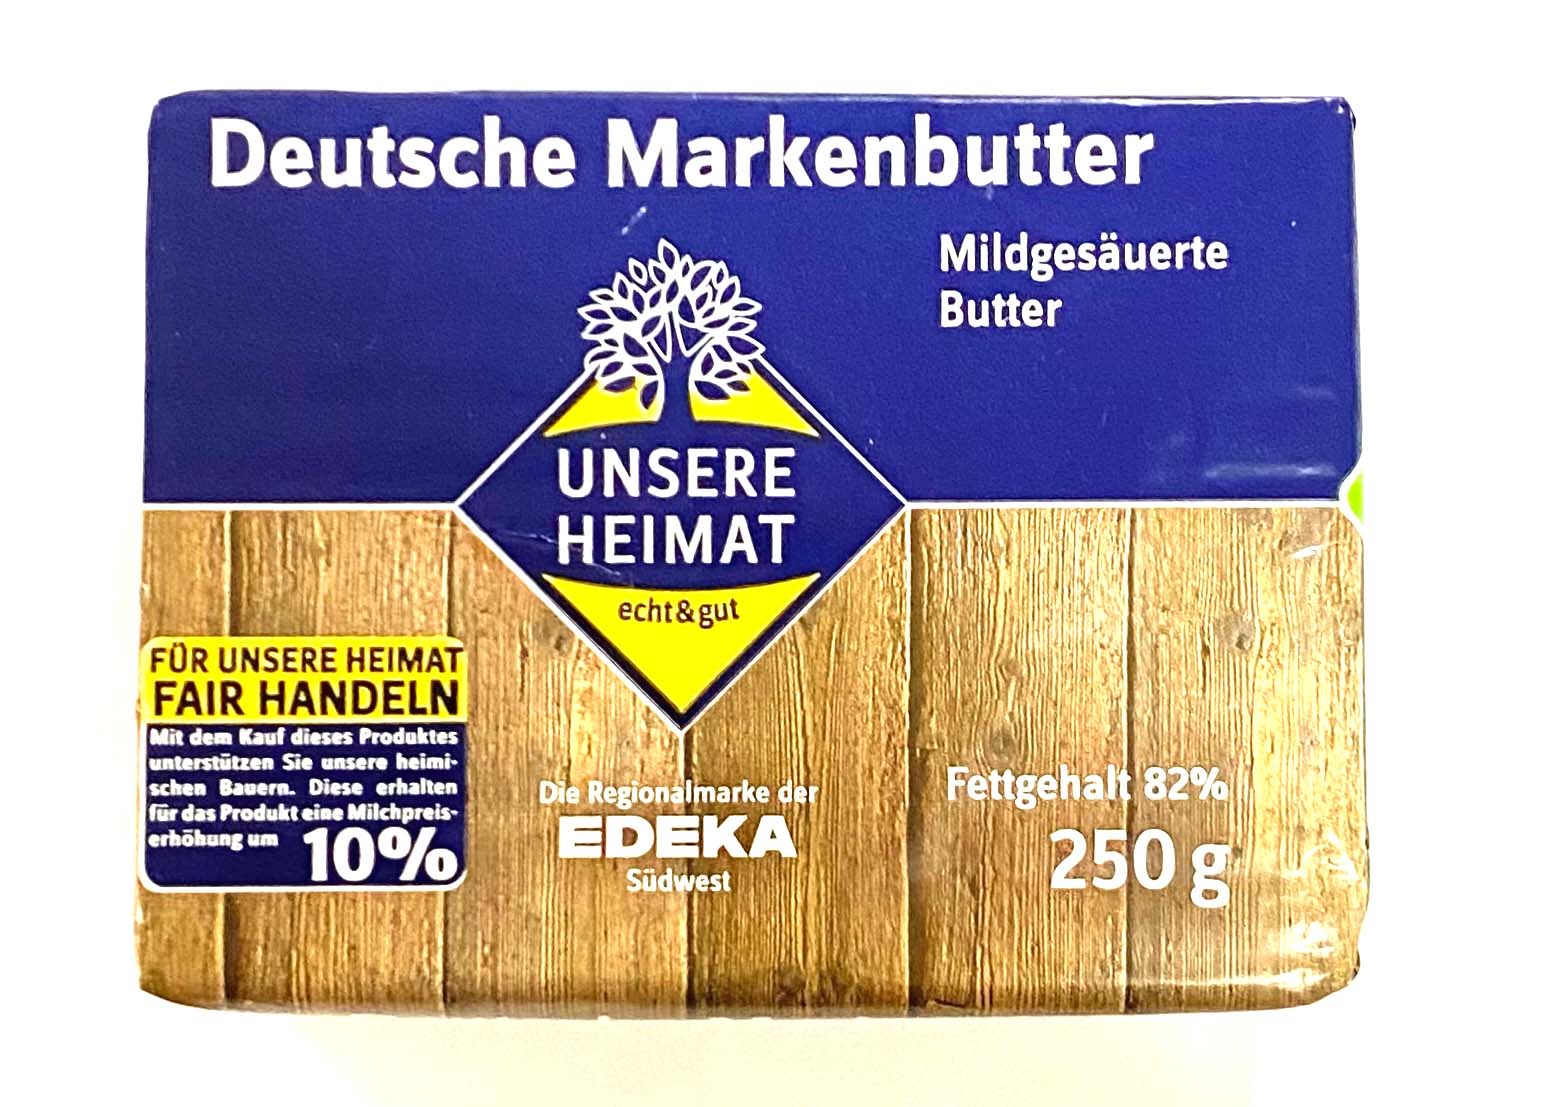 Unsere Heimat Deutsche Markenbutter mildgesäuert 82% Fett 250g